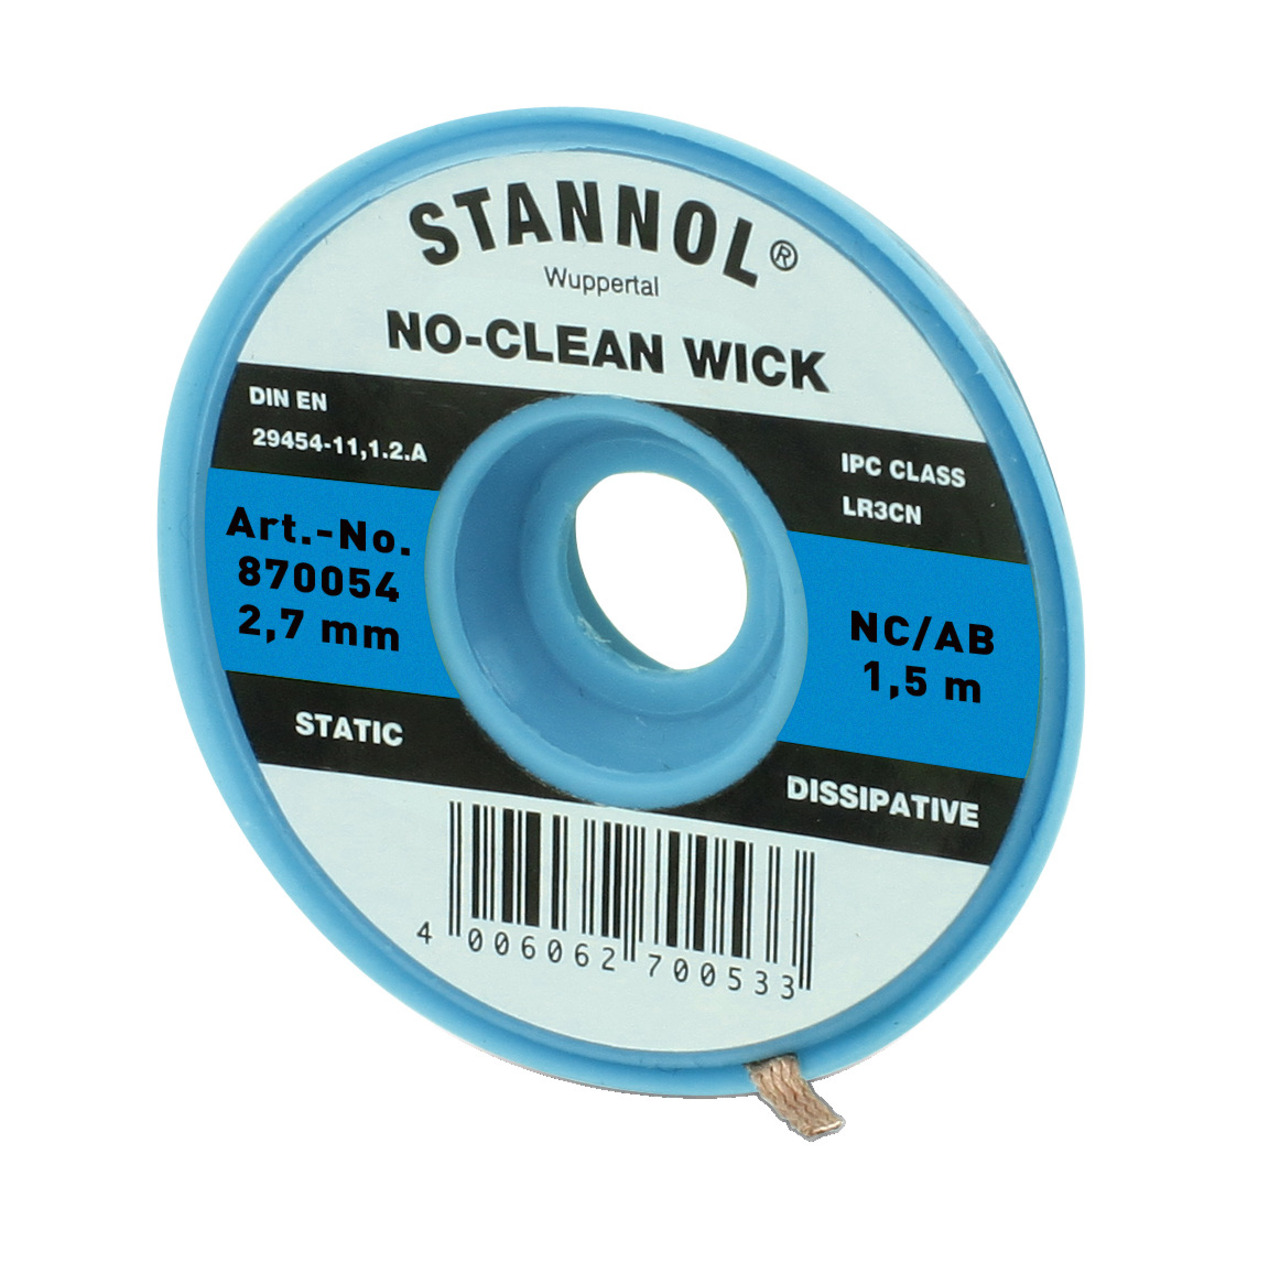 Stannol No-Clean Entltlitze- ESD-verpackt- 1-5 m lang- 2-7 mm breit